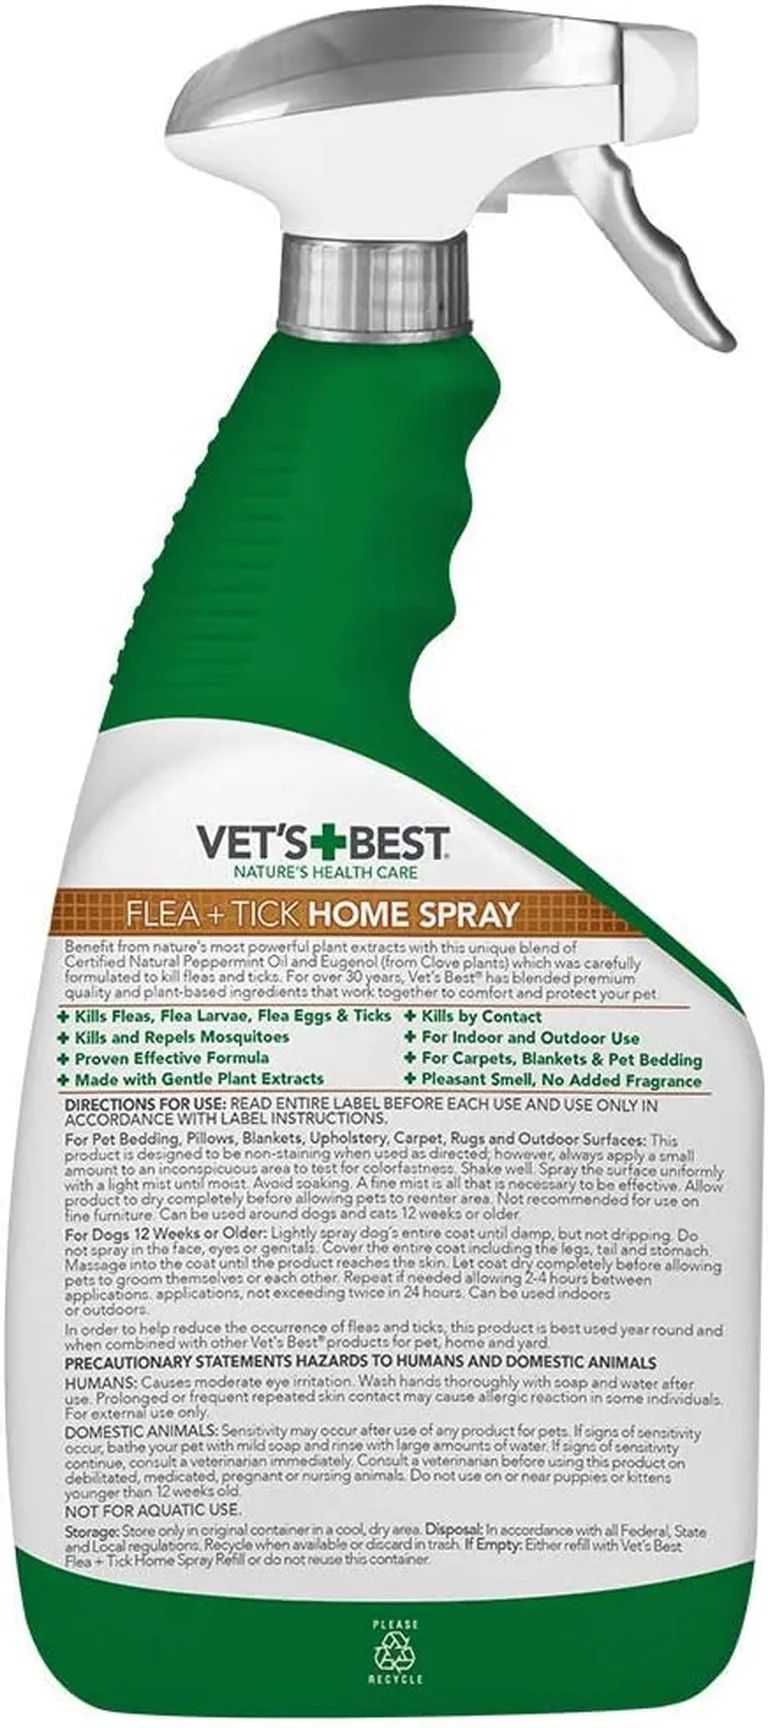 Vet's Best Flea & Tick Home Spray Photo 2